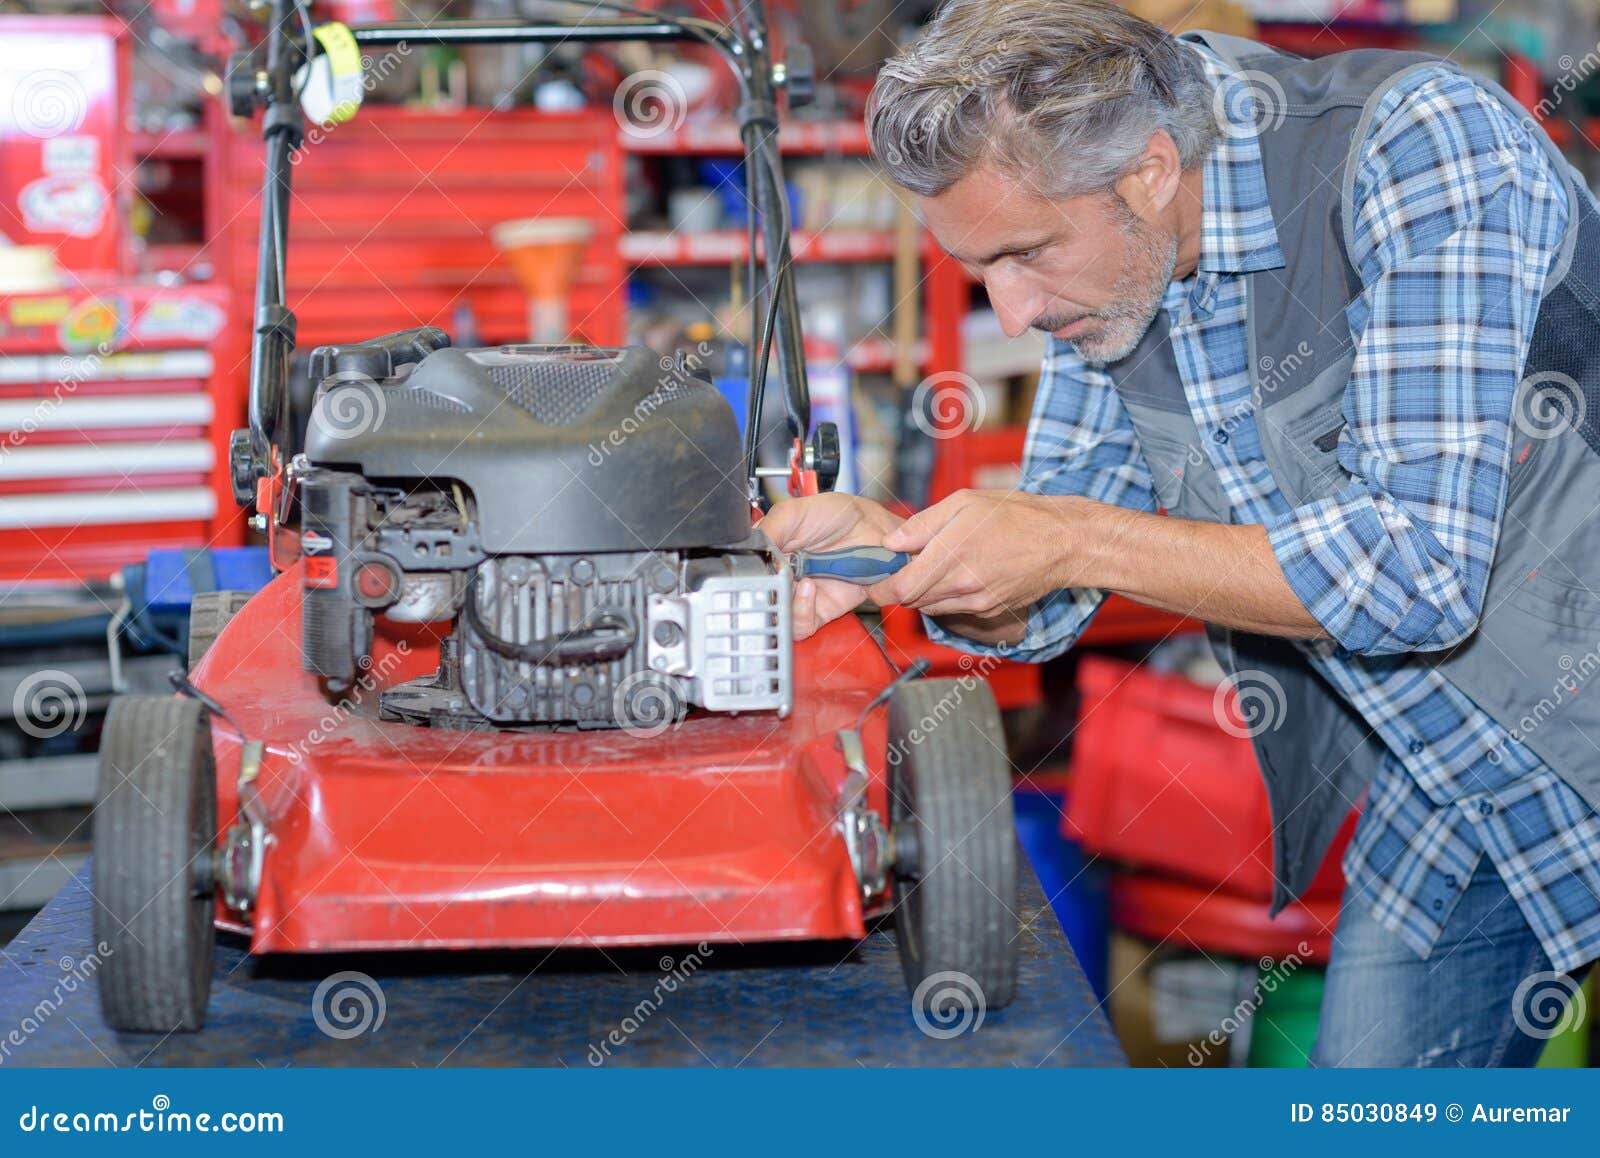 worker fixing lawn mower